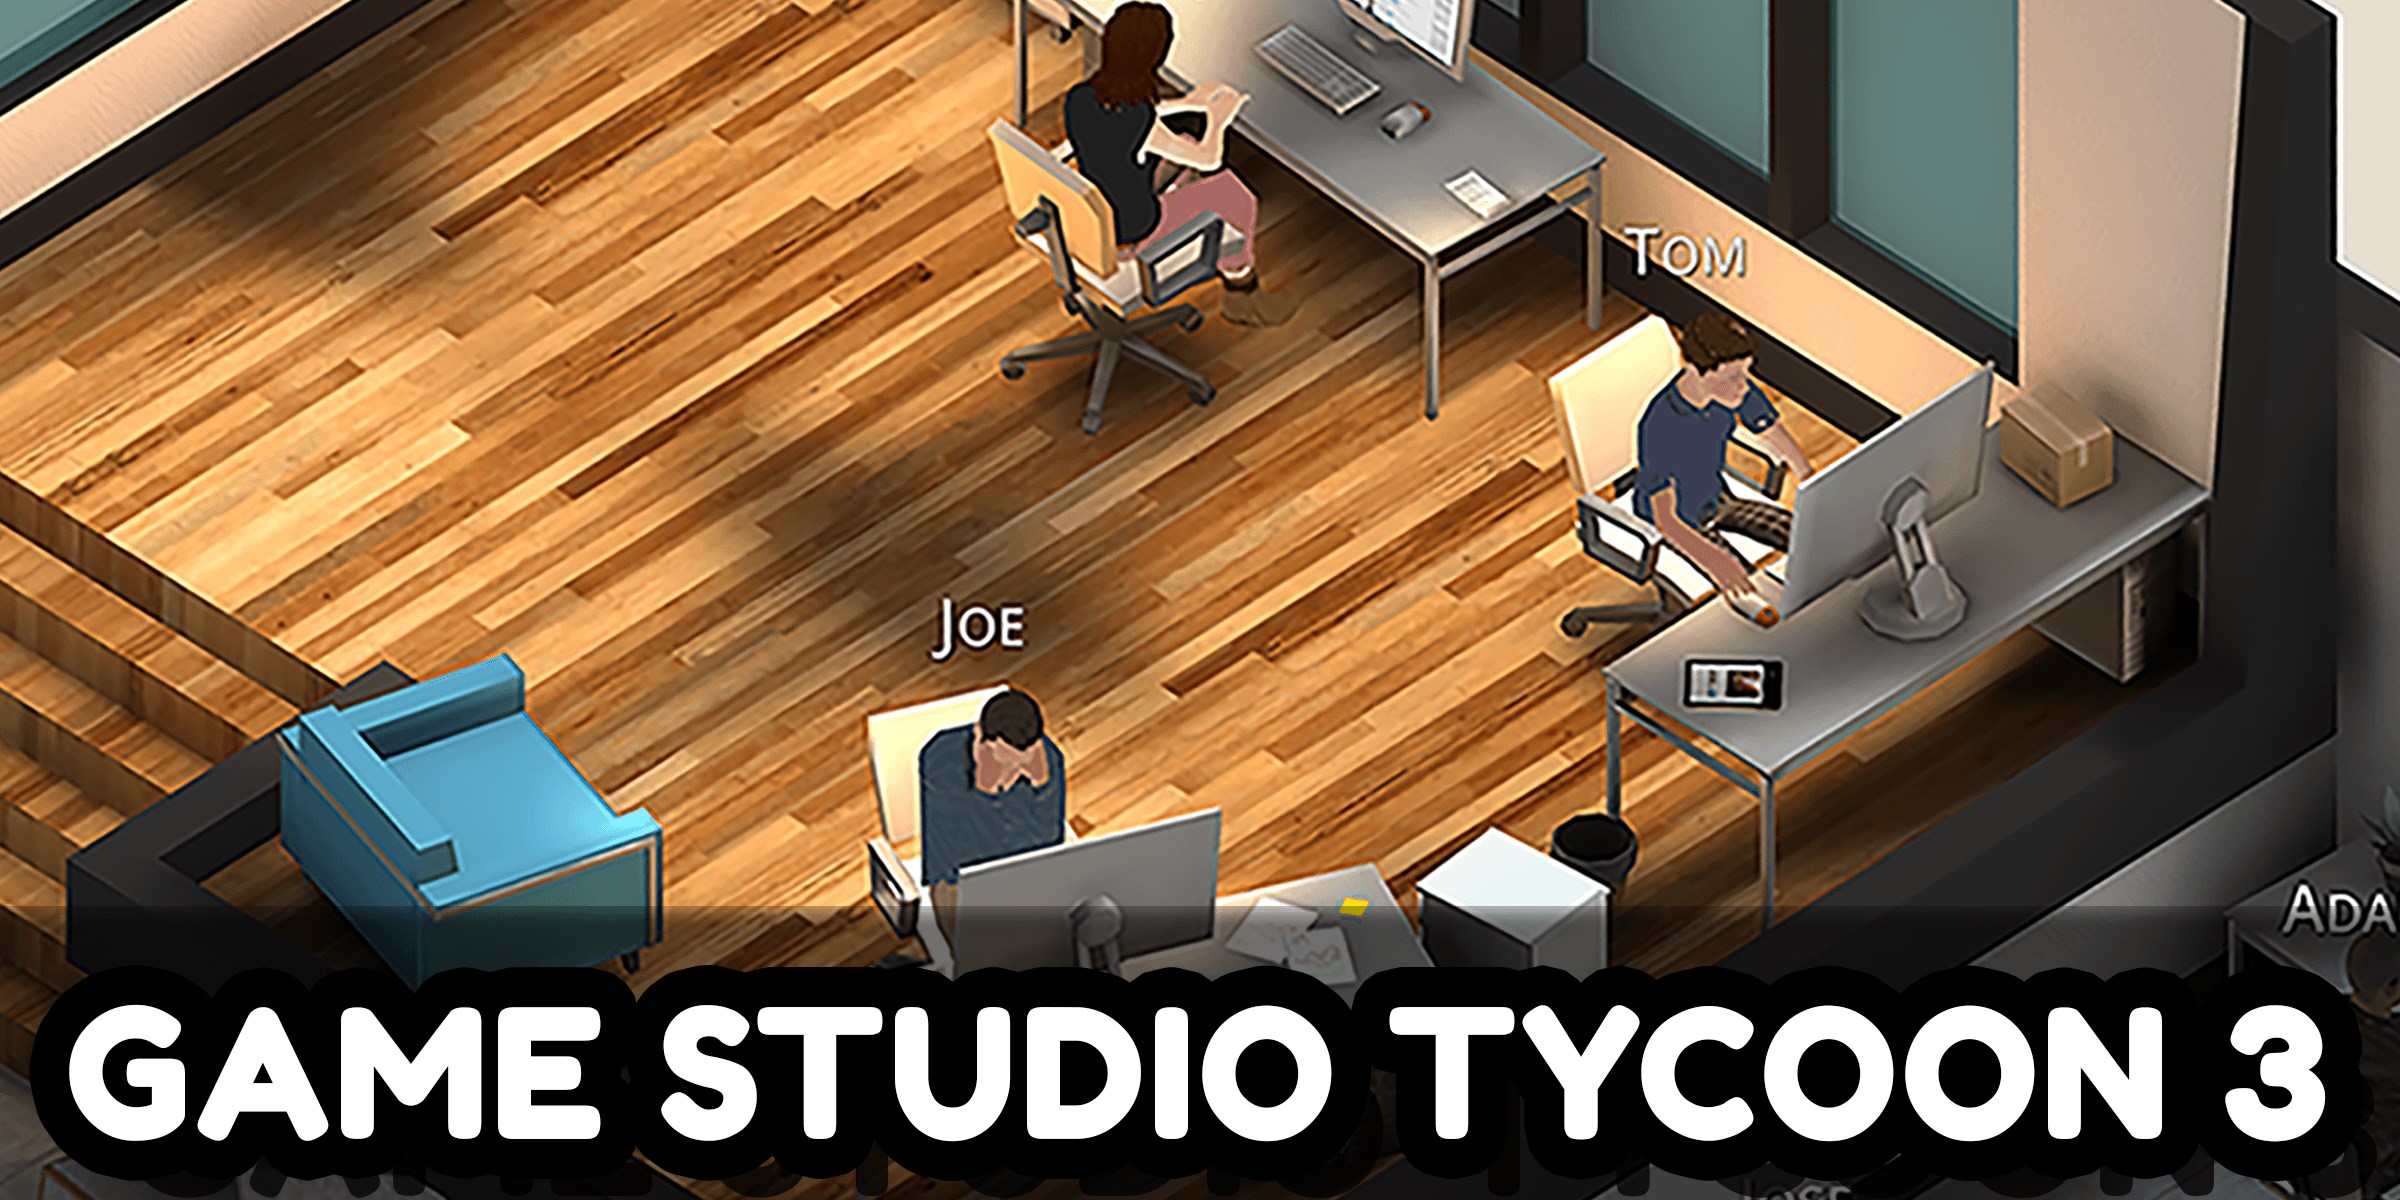 Game studio 3. Game Studio Tycoon. Game Studio Tycoon 3. Game Dev Tycoon 3. City game Studio.